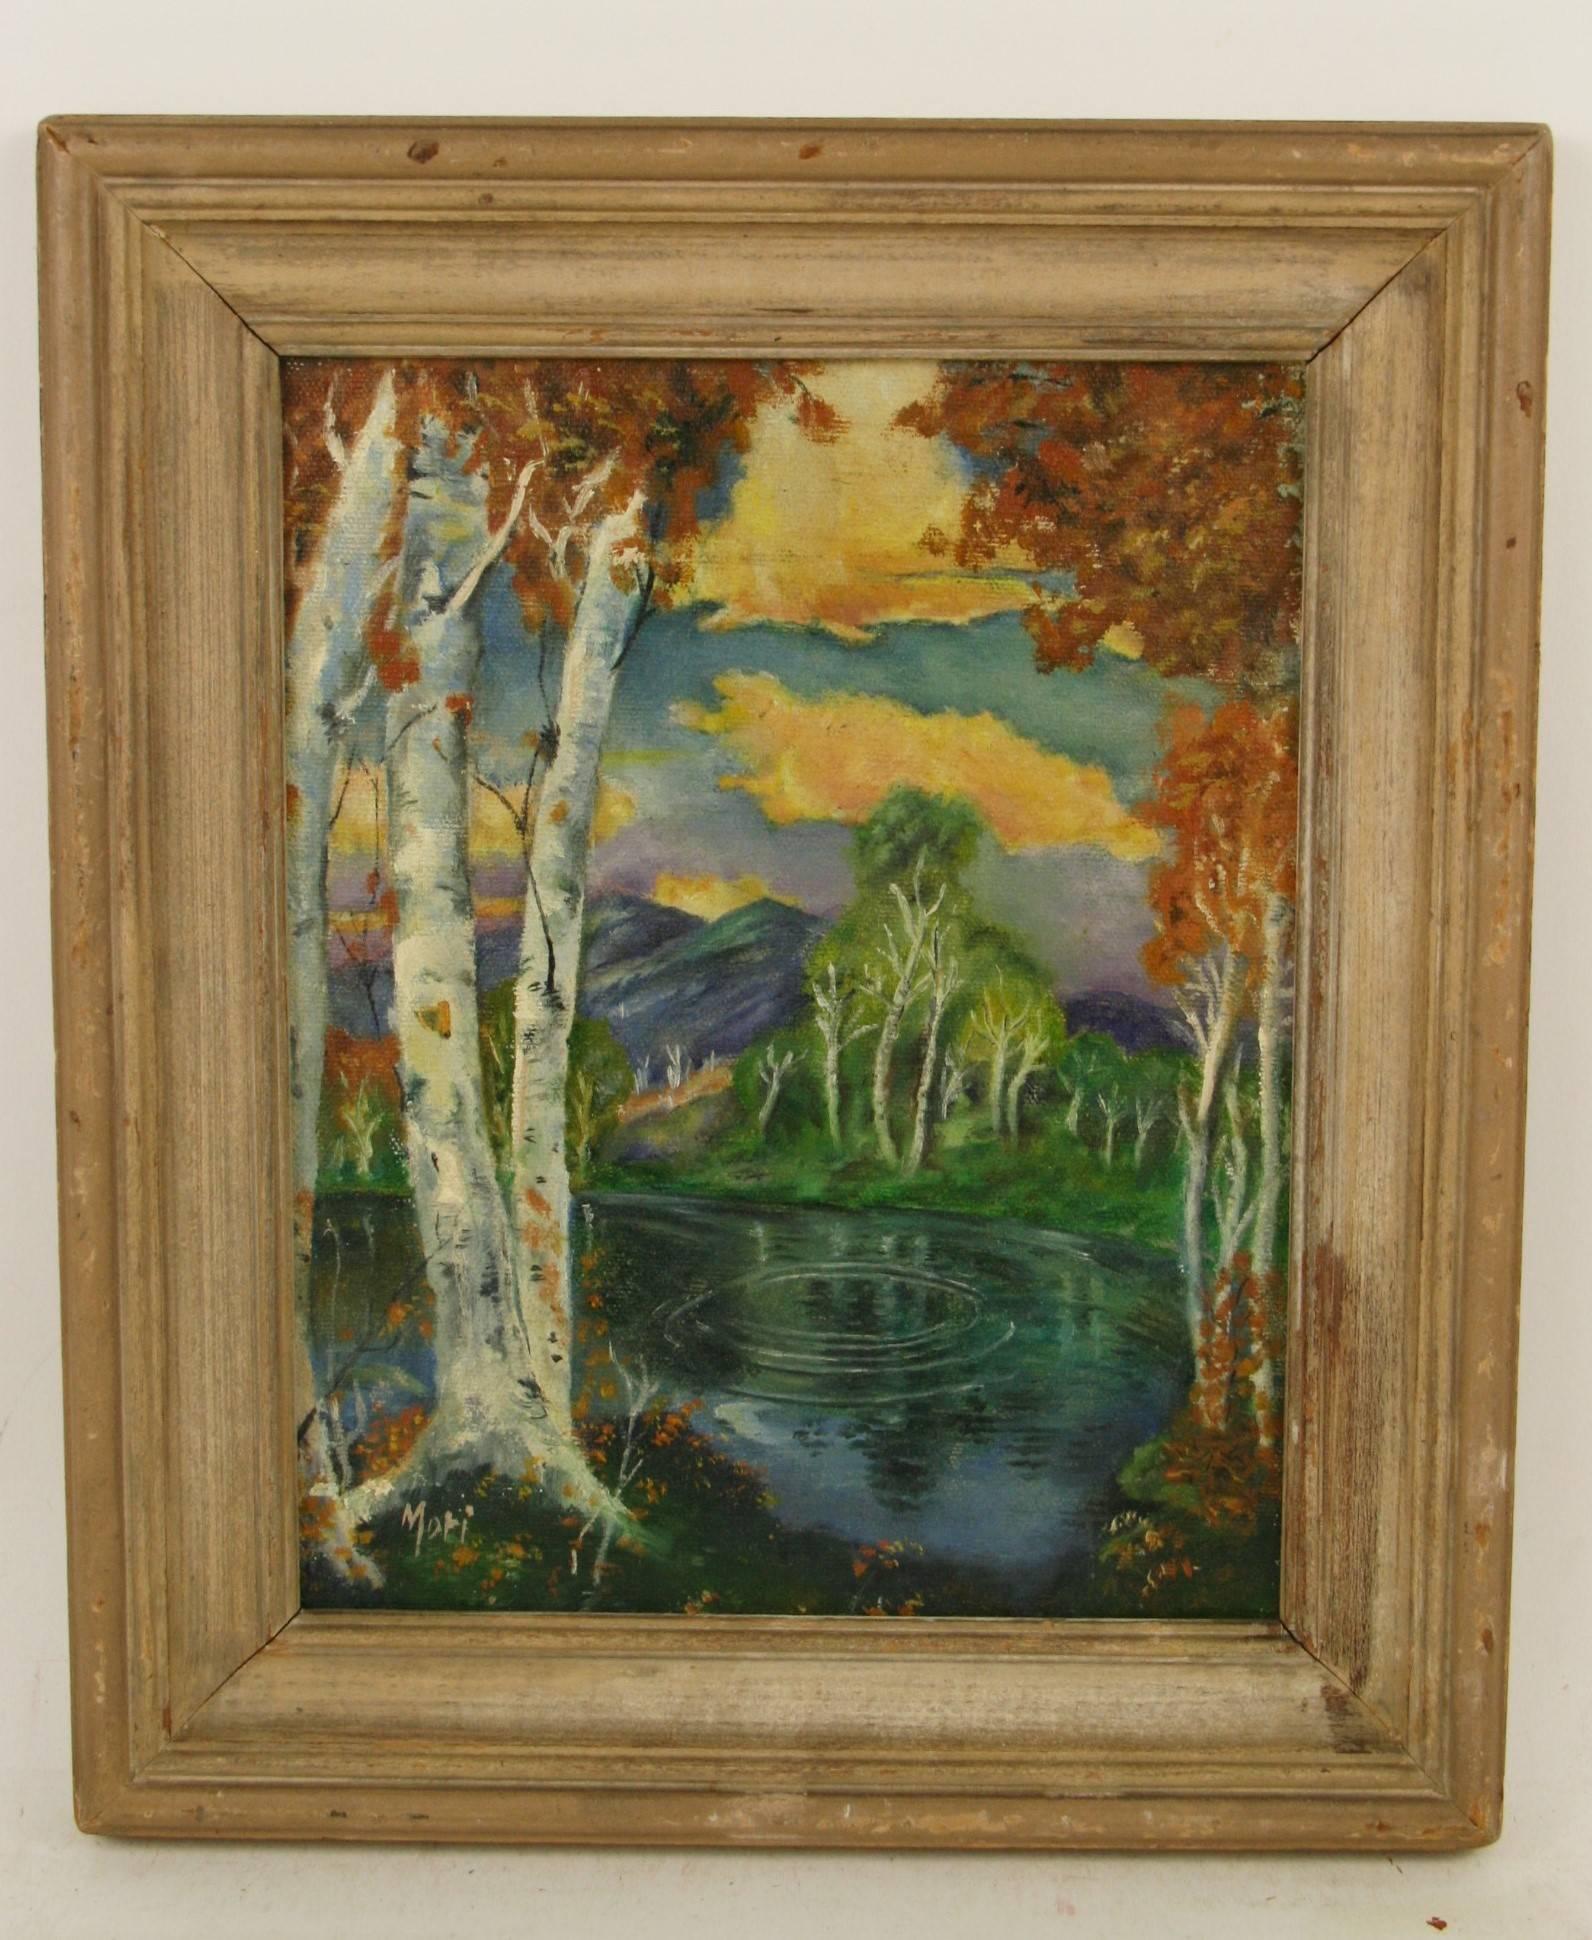 Paysage impressionniste américain ancien encadré de bouleau, 1940 - Painting de Mori